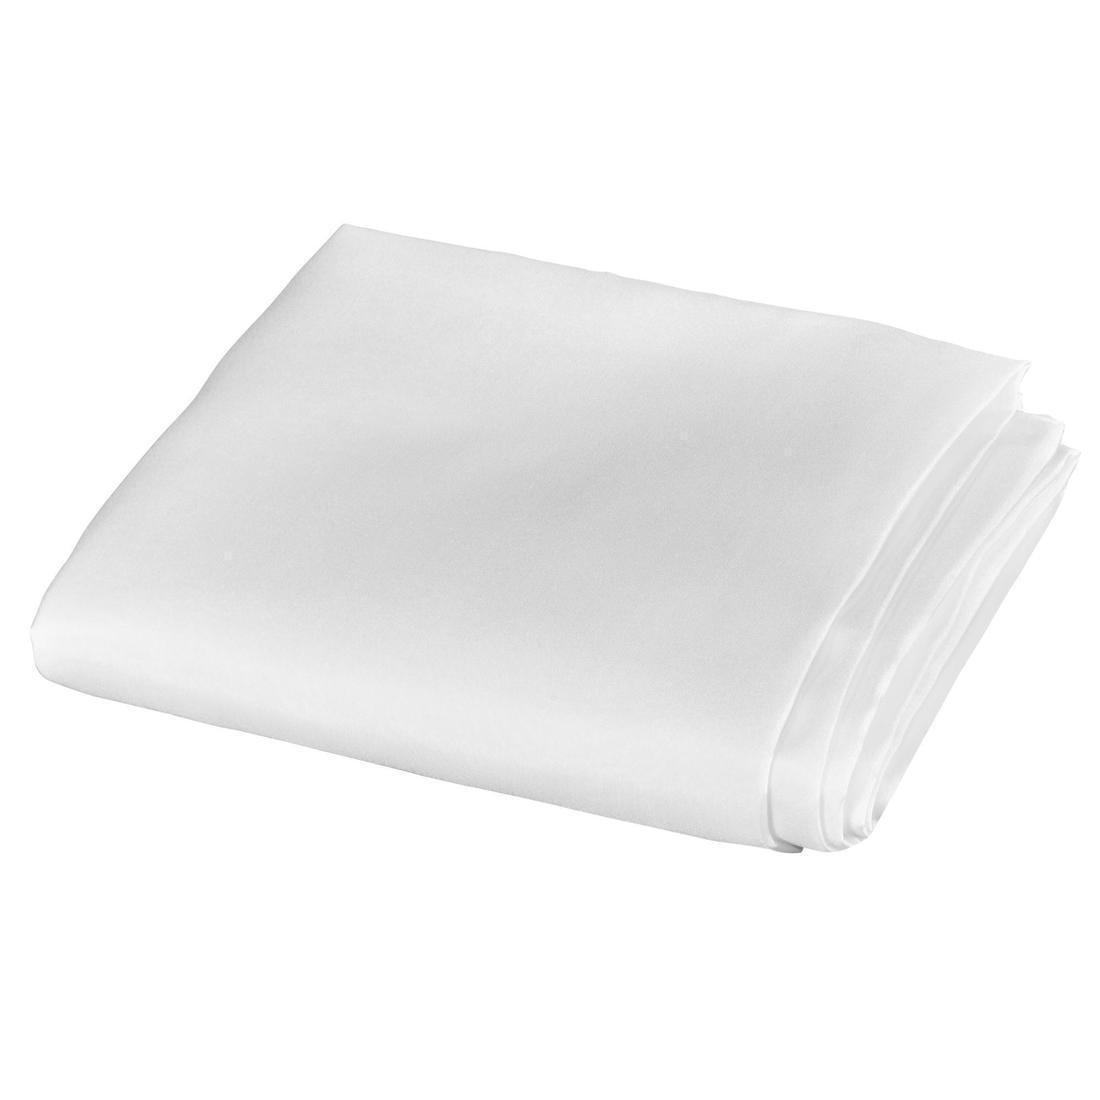 FORCLAZ - Silk Sleeping Bag Cover - White, Snow white